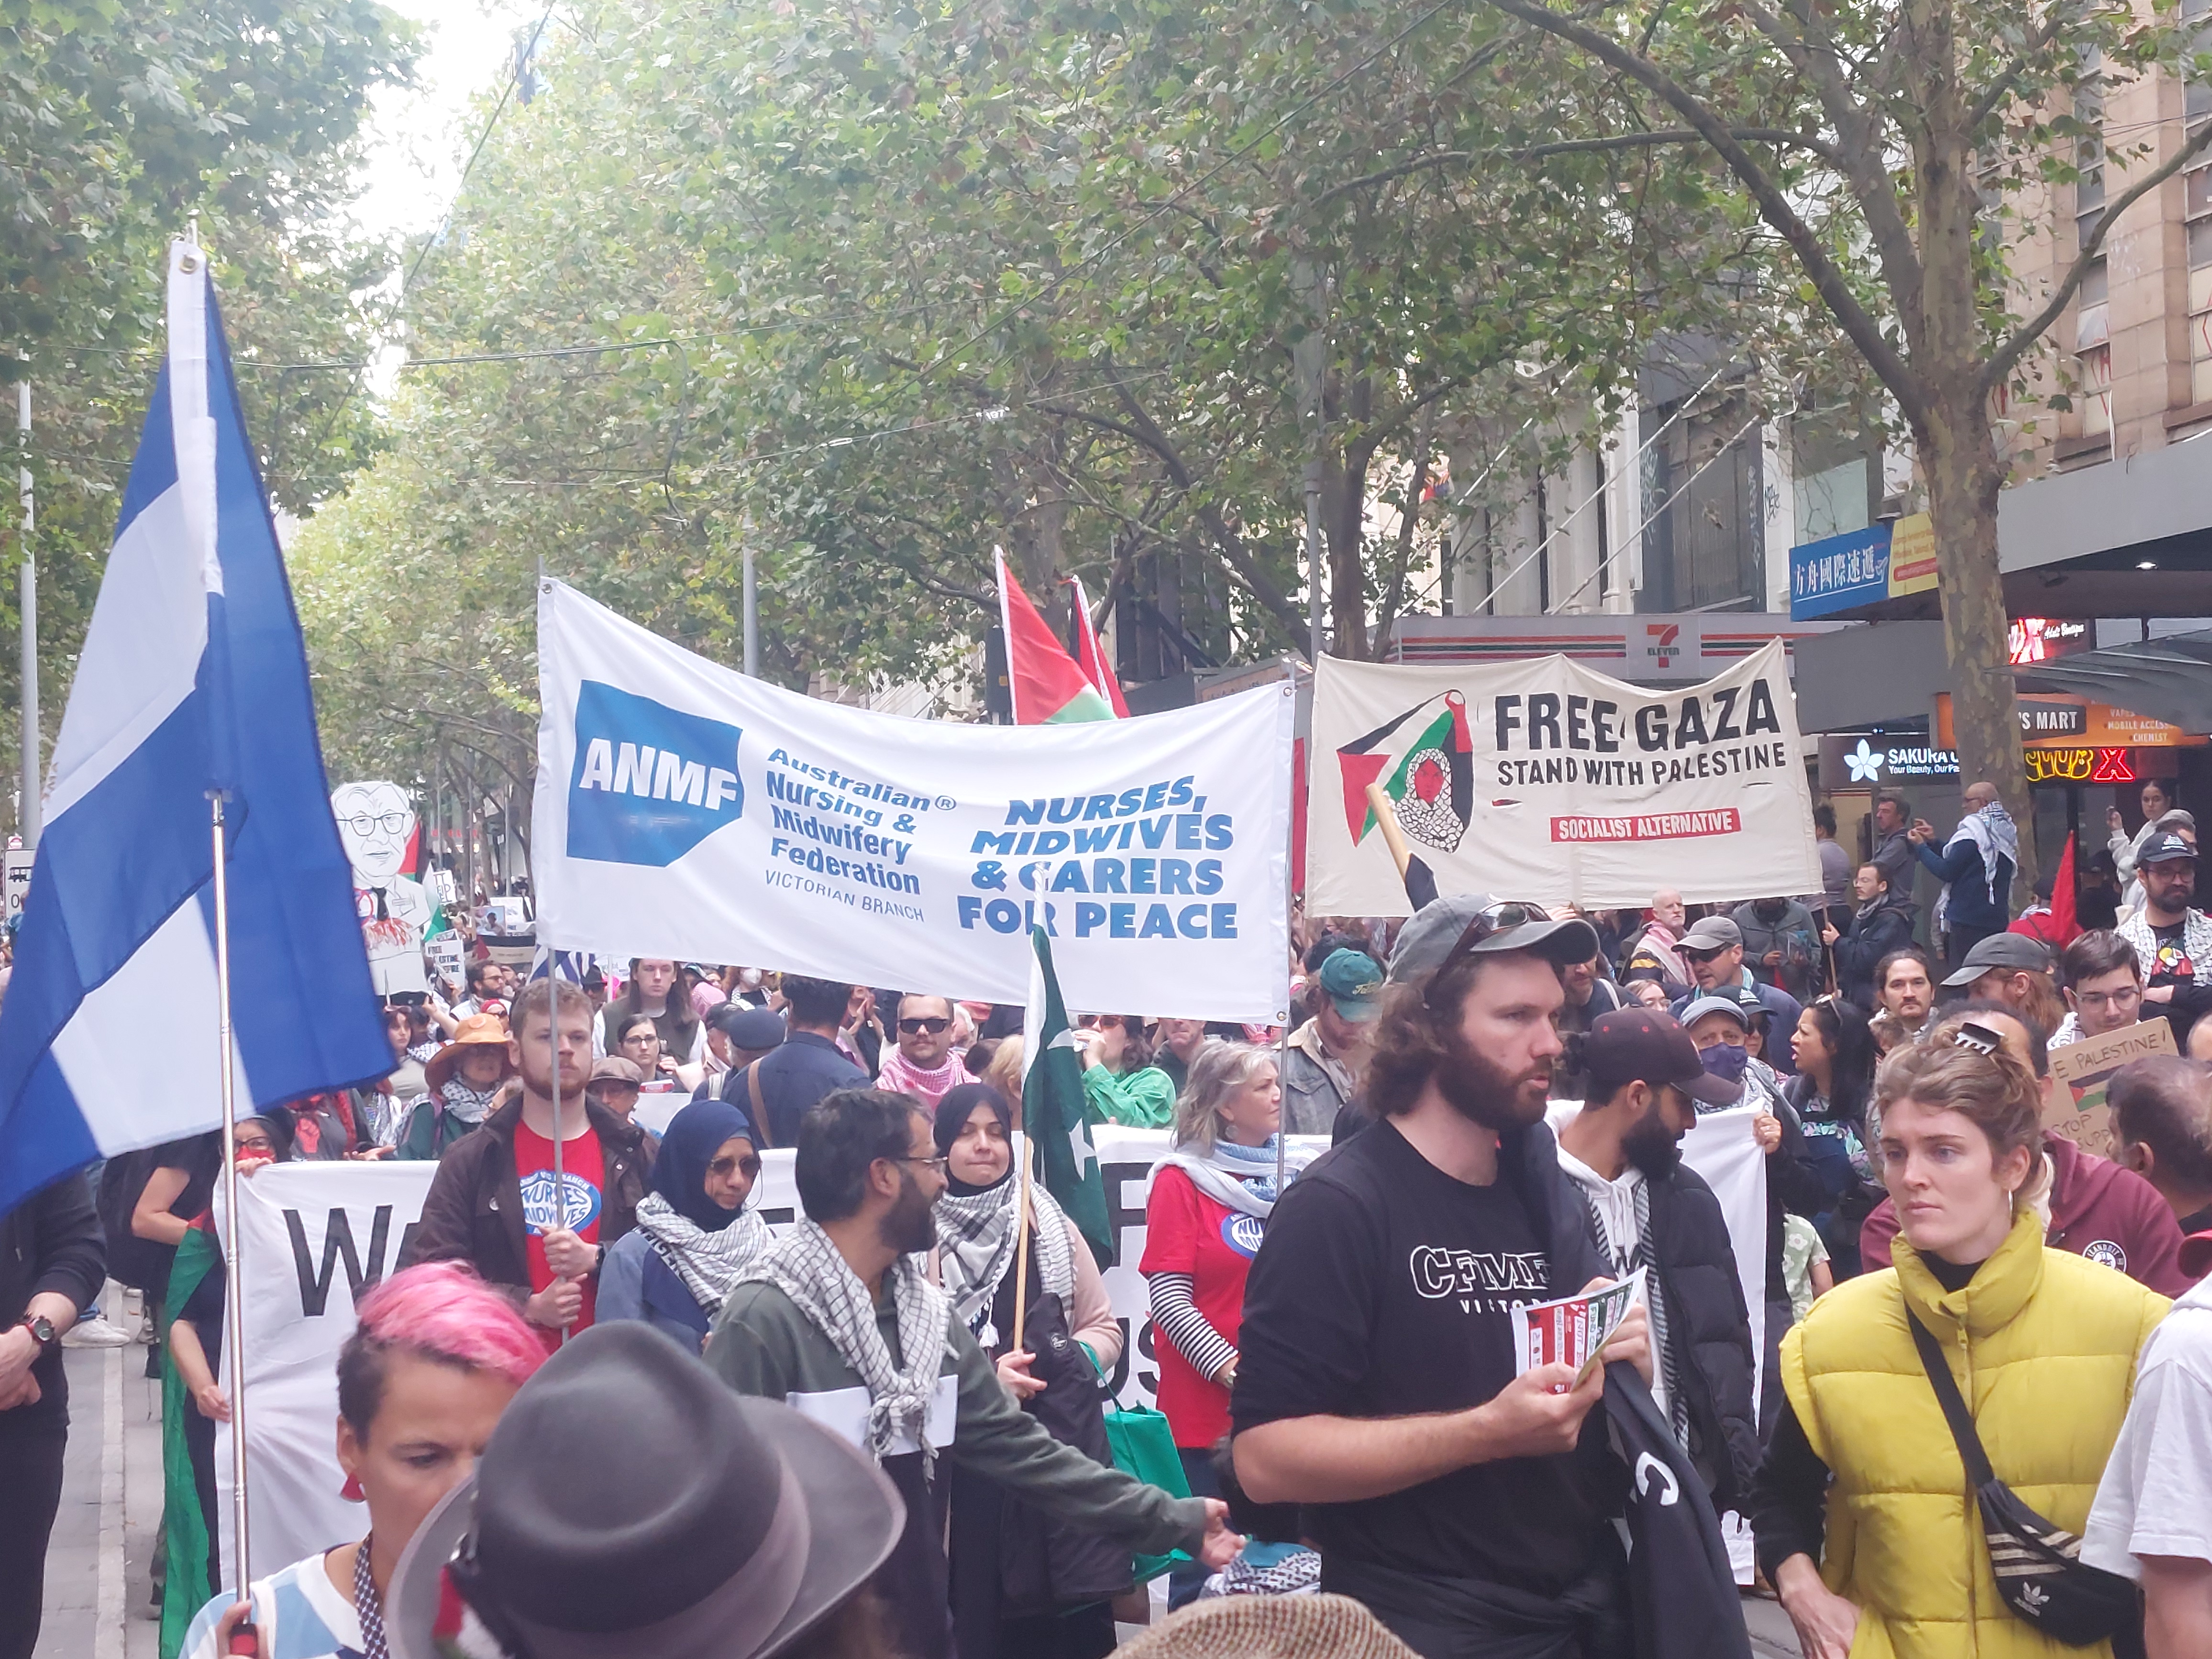 Union banners, Naarm/Melbourne, April 14